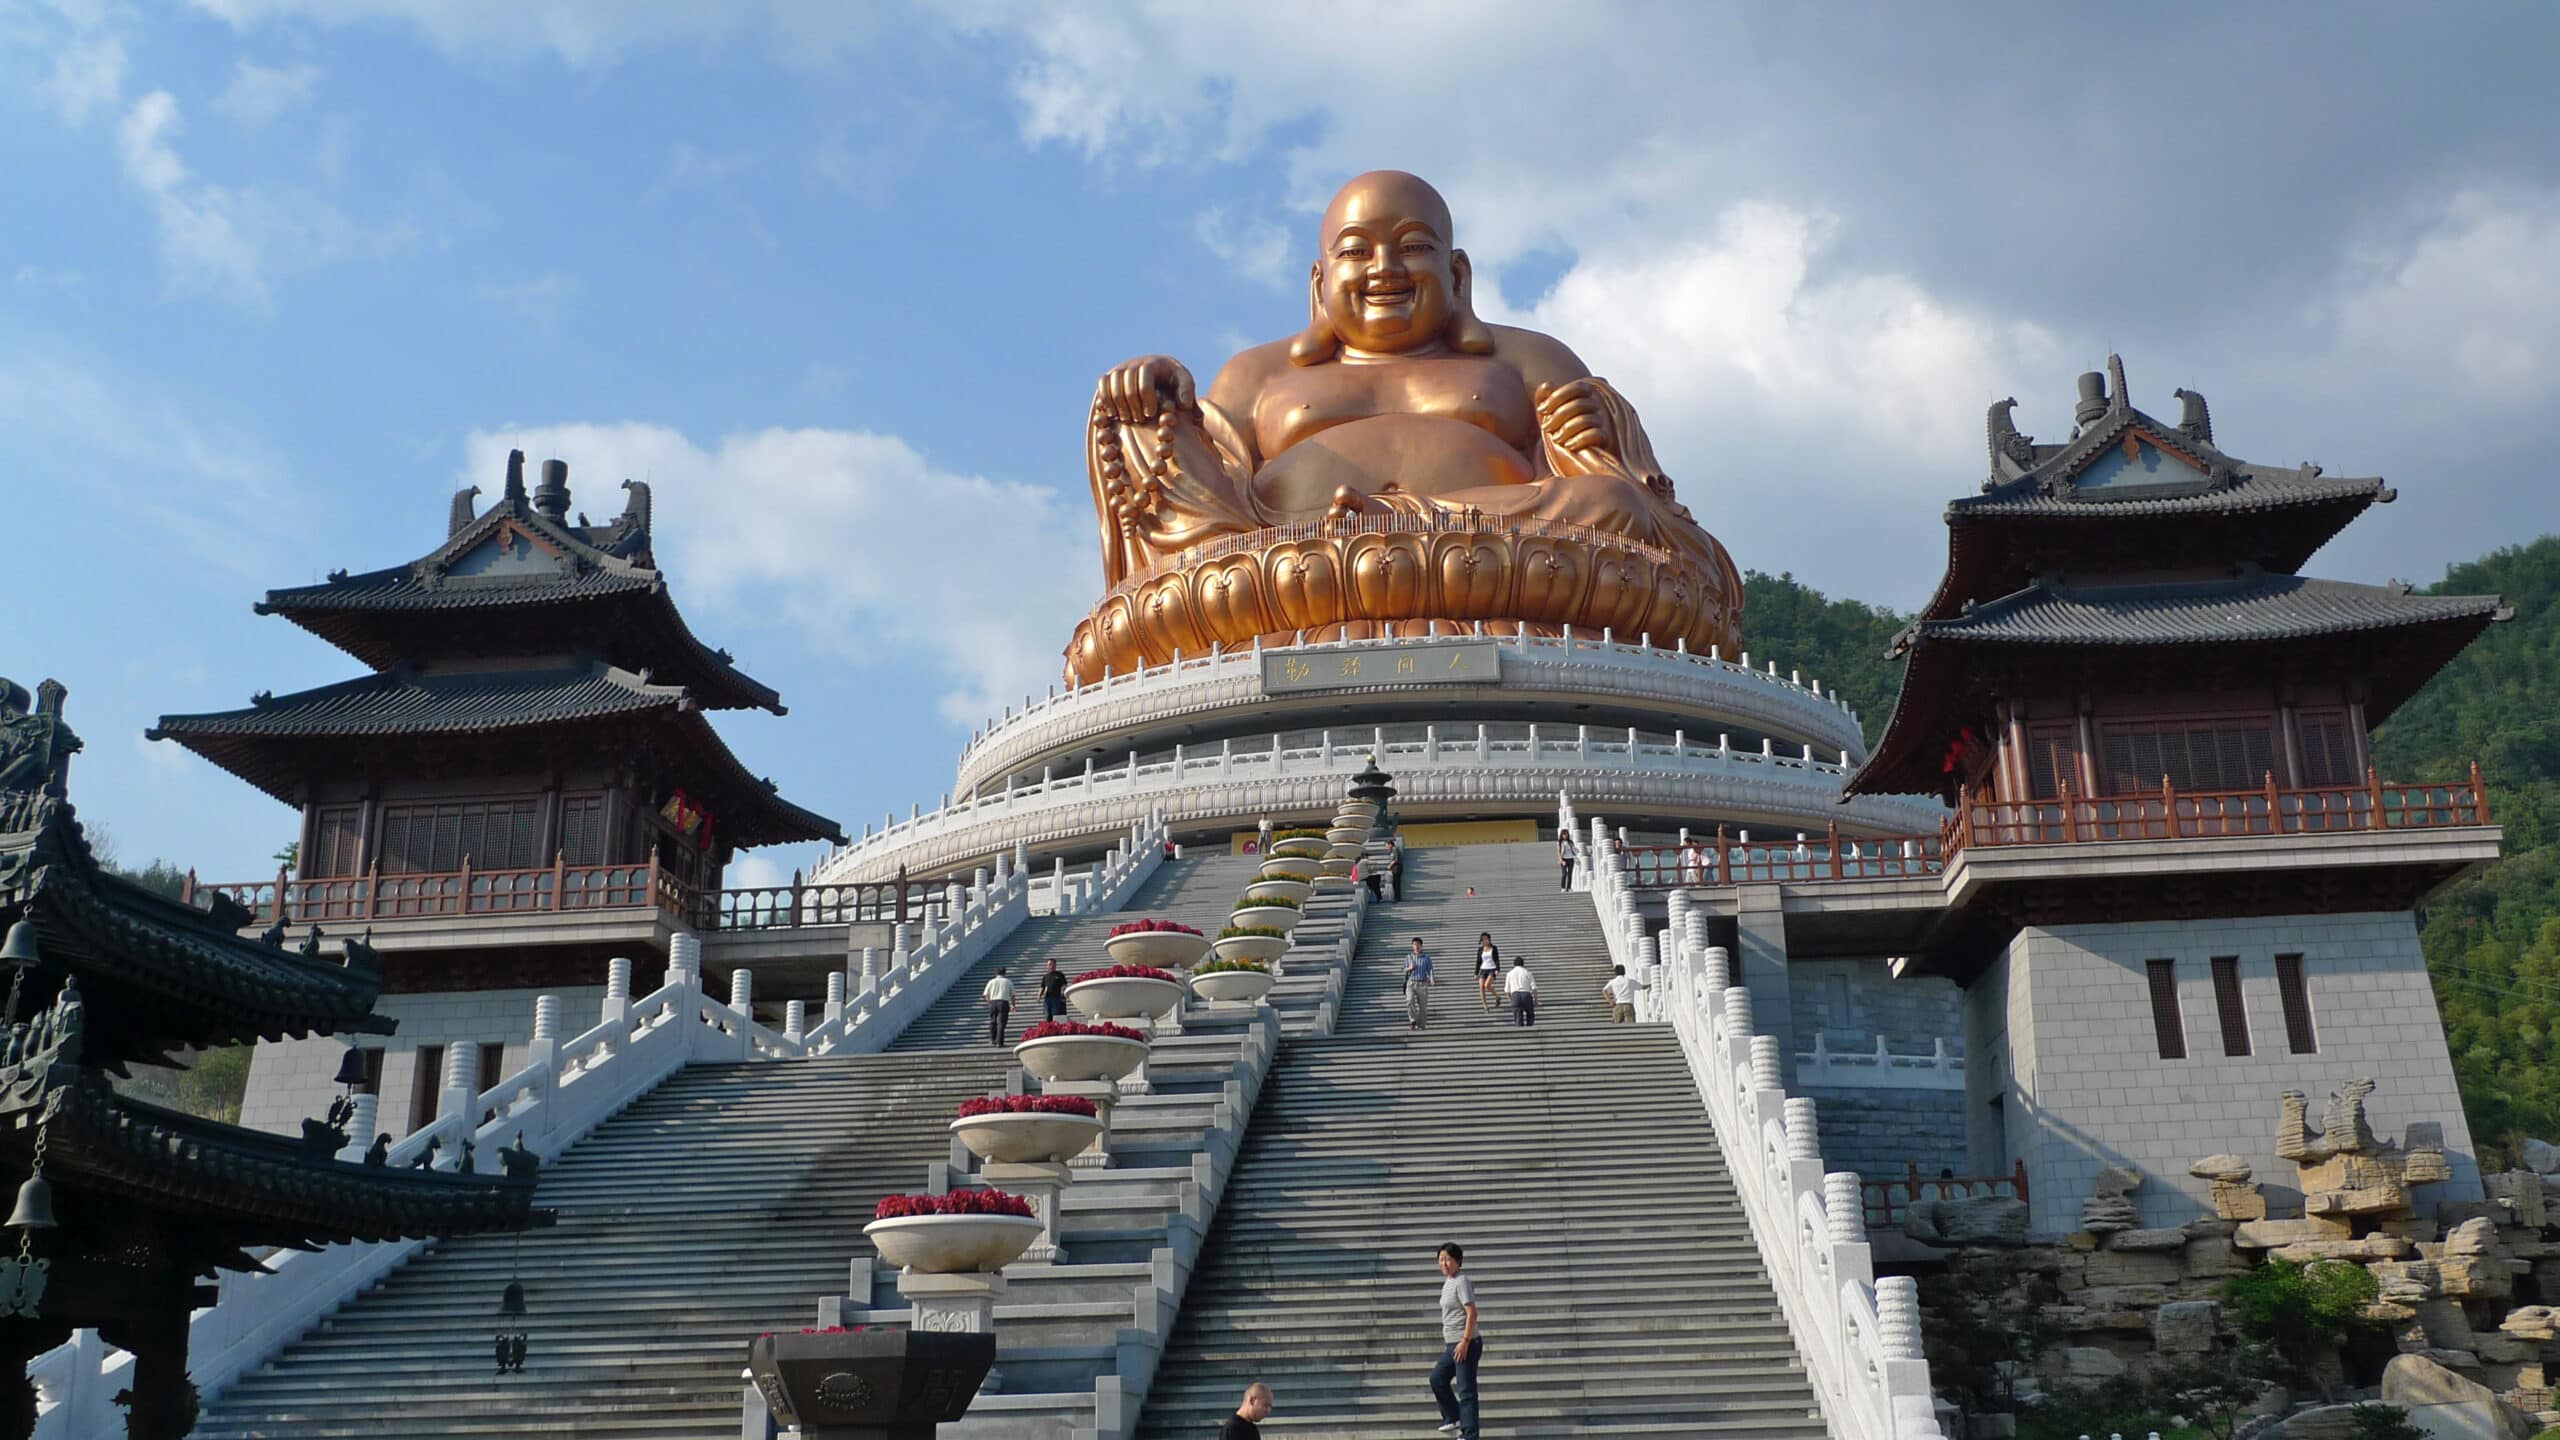 Big Buddha in Ningbo